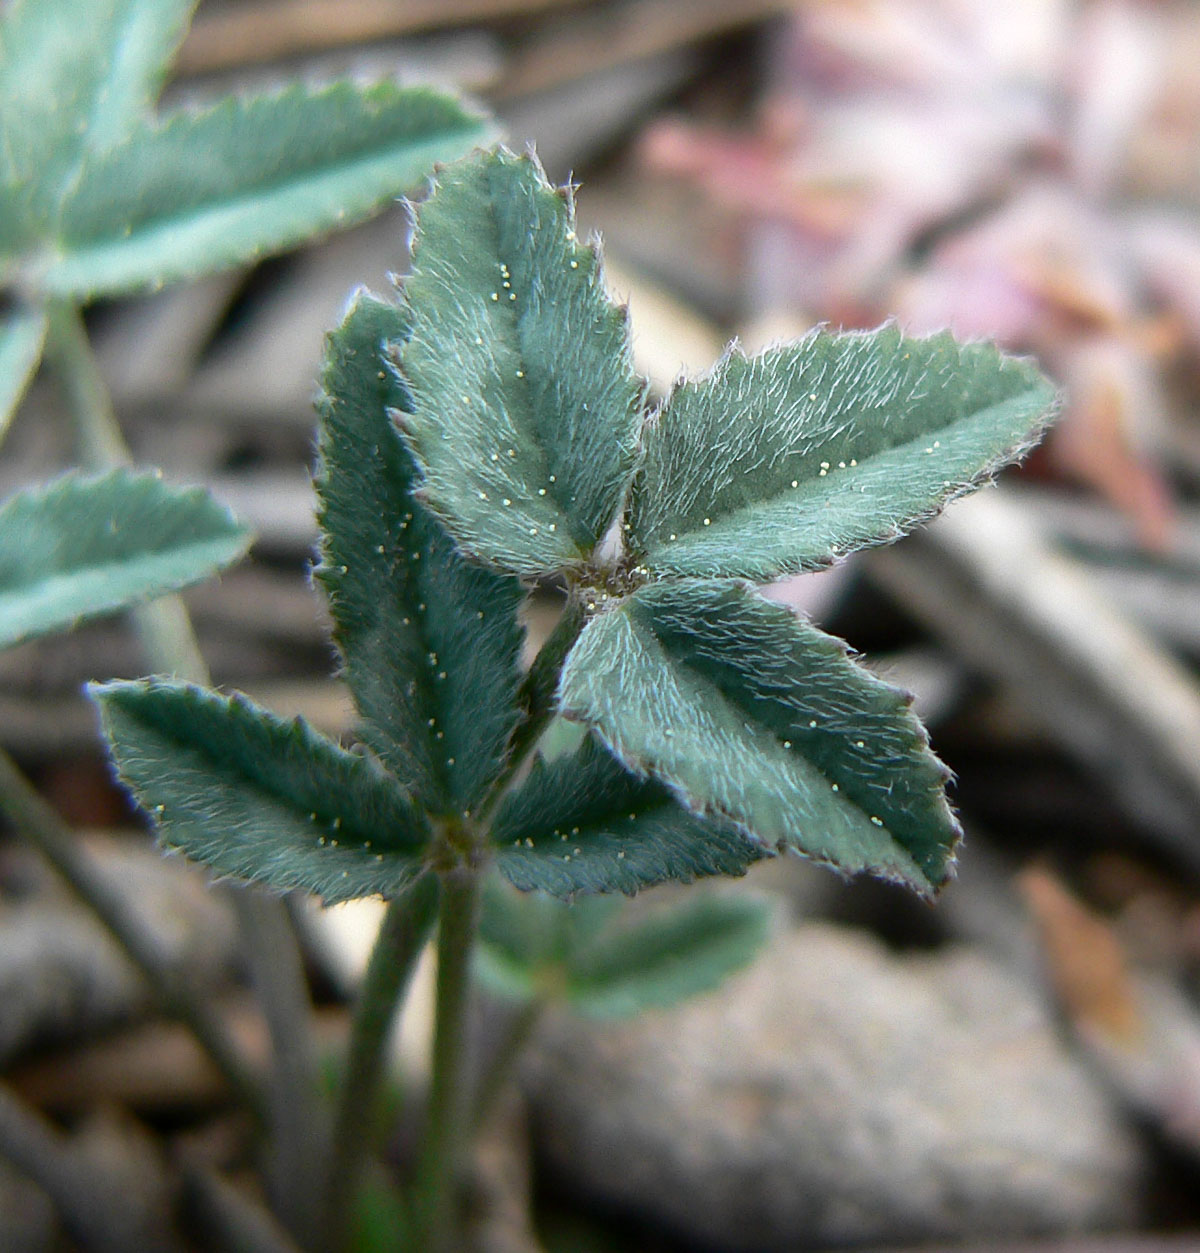 Hollyleaf clover (Trifolium gymnocarpon)